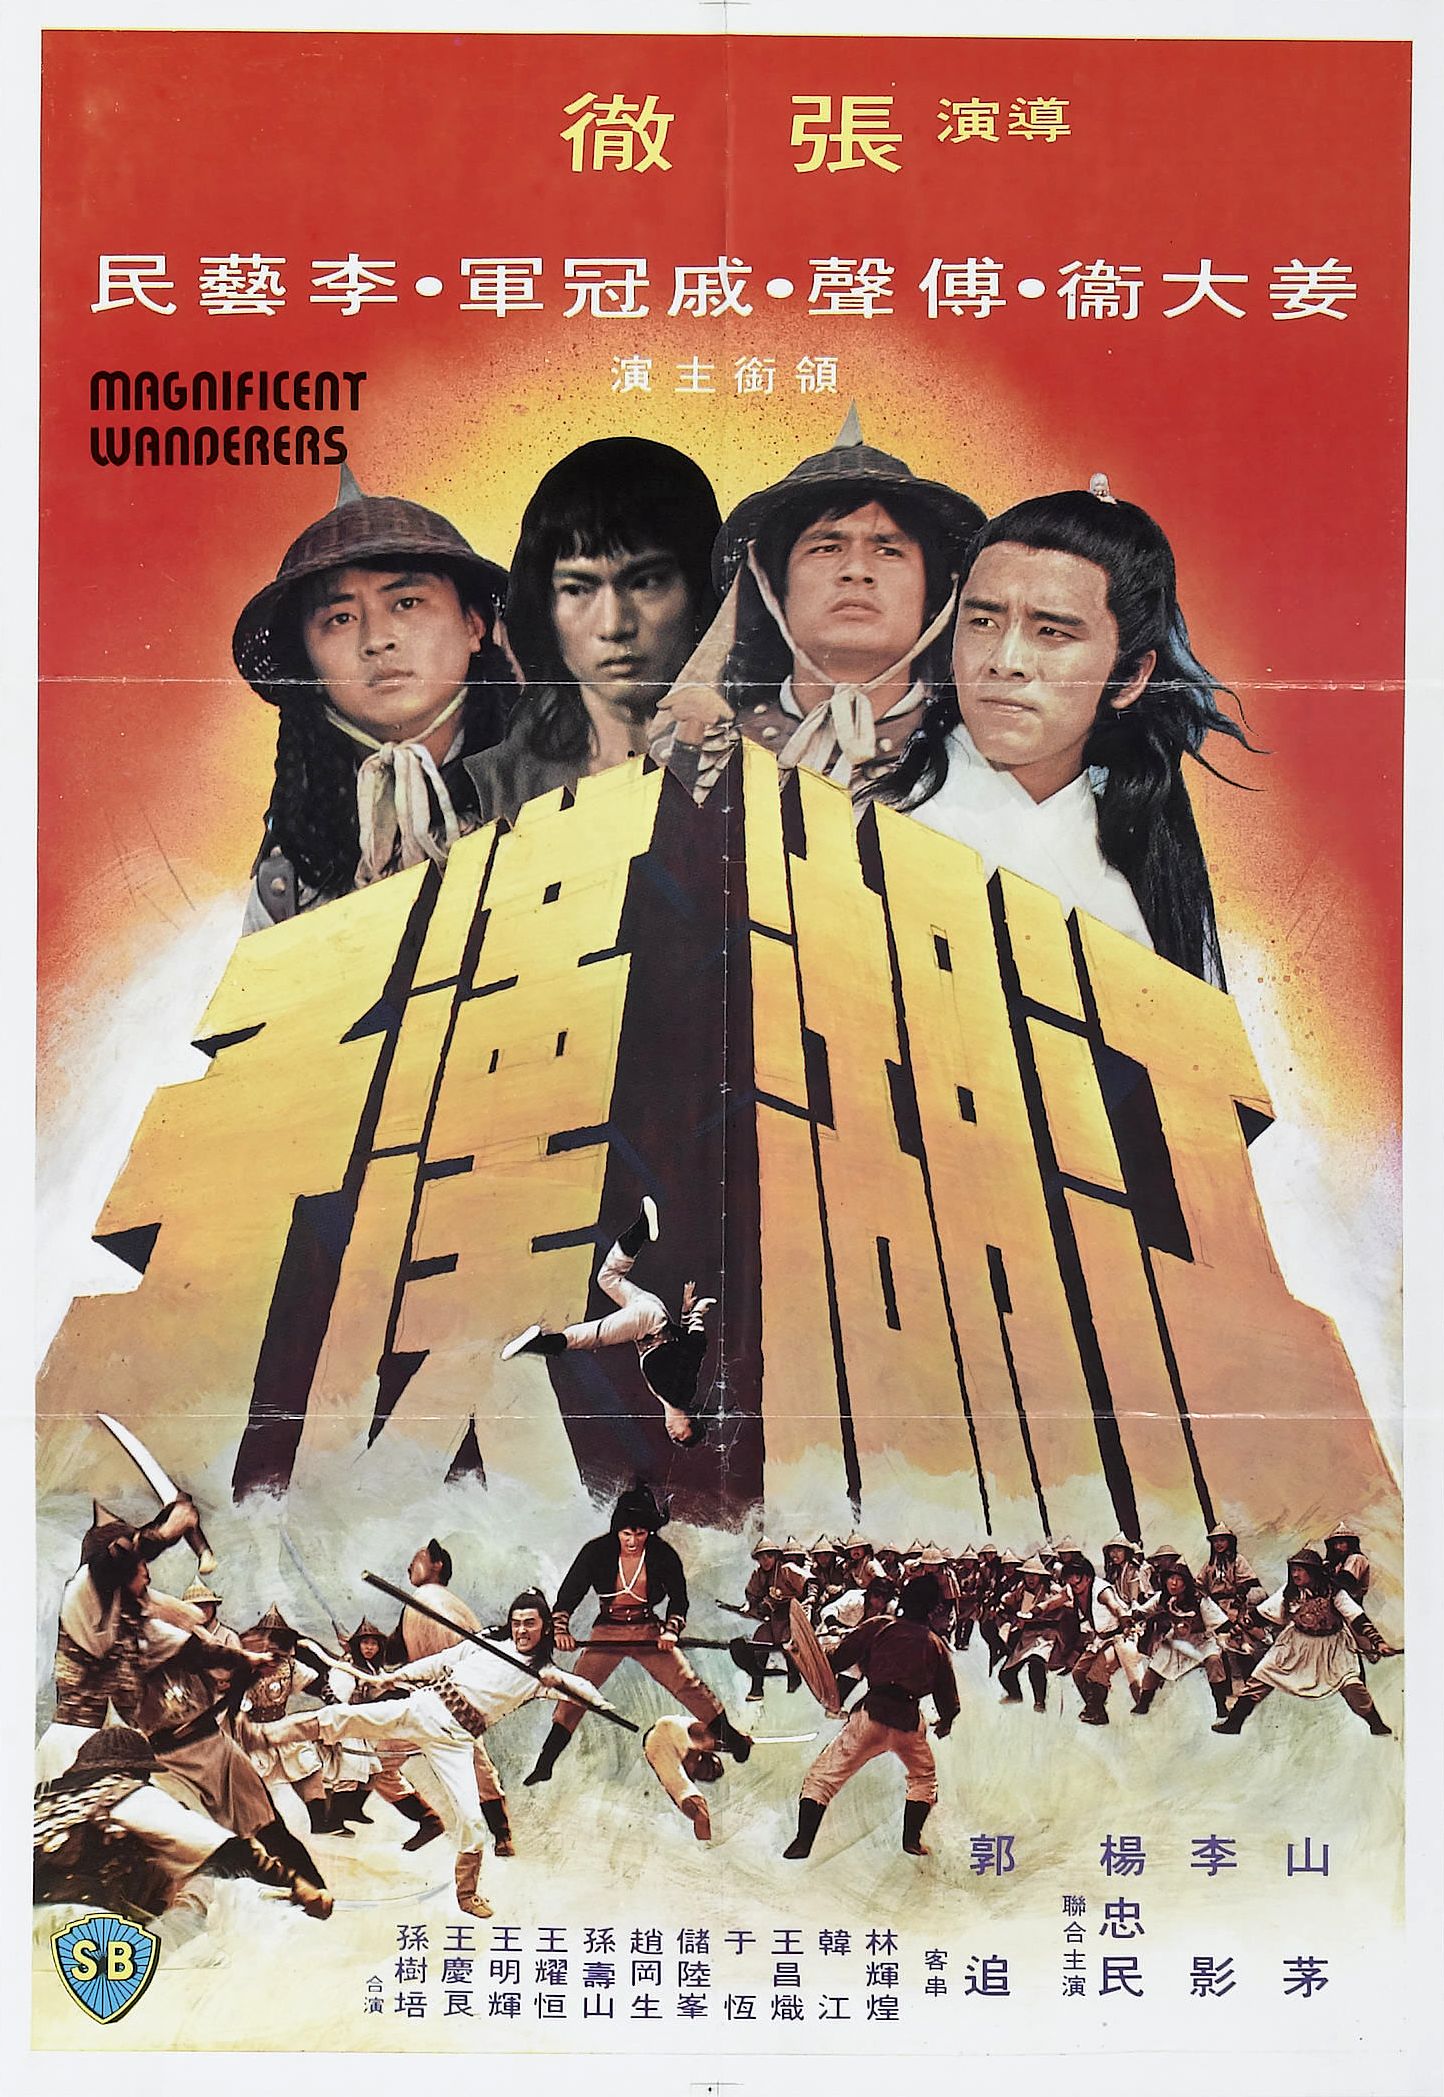 Jiang hu han zi (1977) with English Subtitles on DVD on DVD